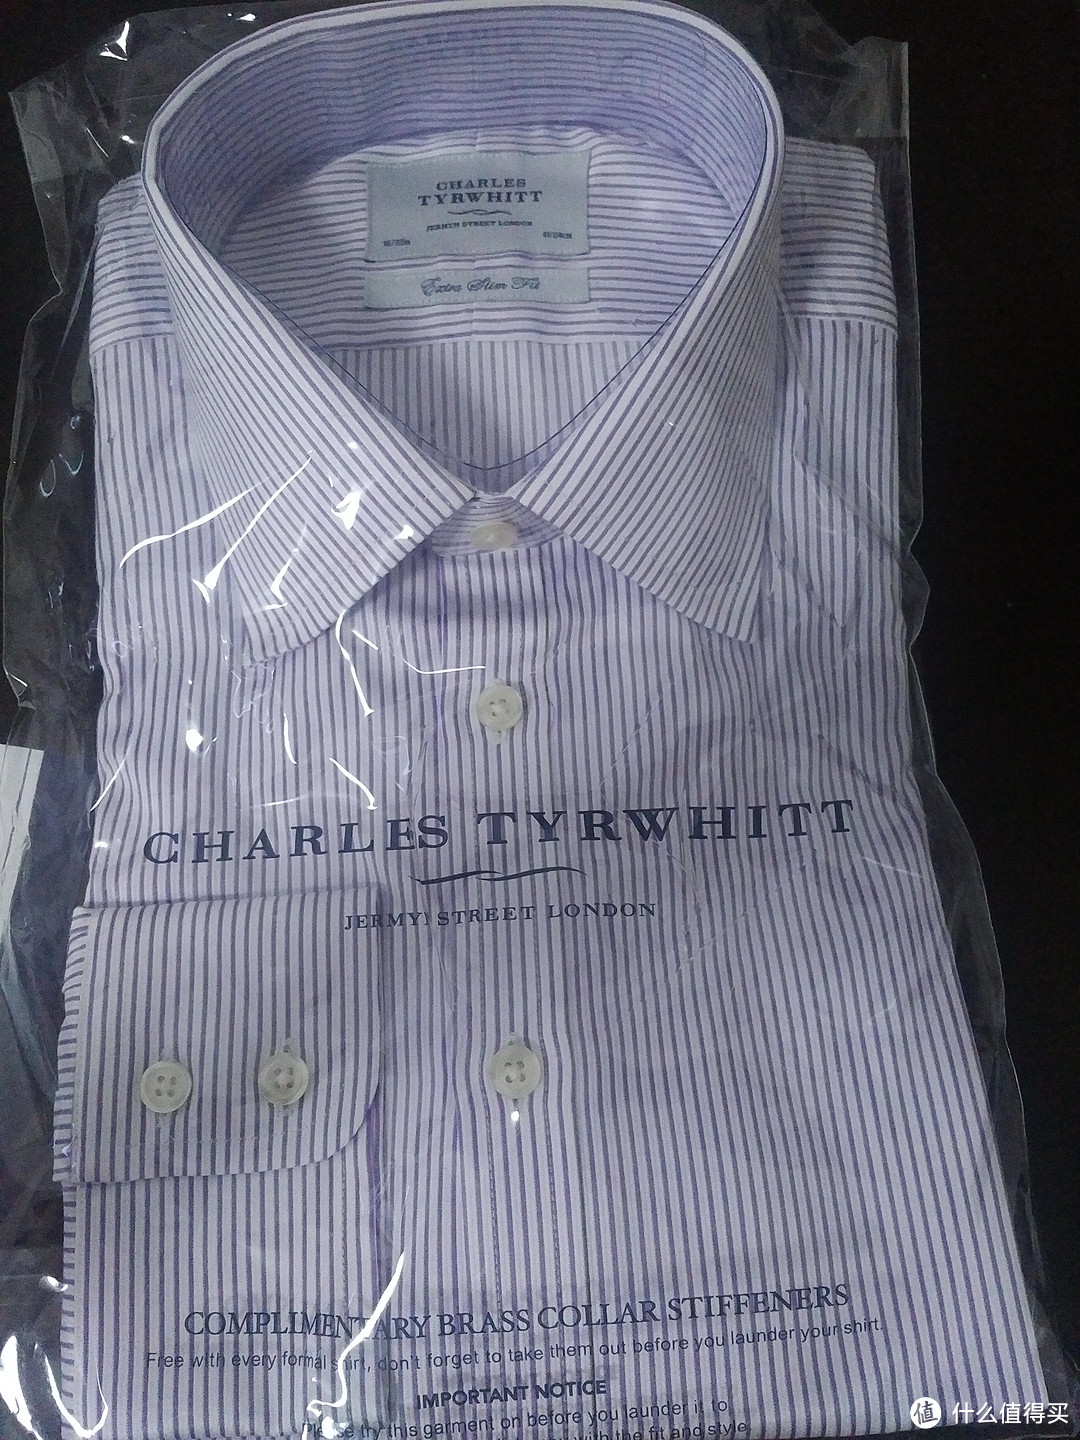 低价试错英国“总统御衣”——Charles Tyrwhitt 衬衫